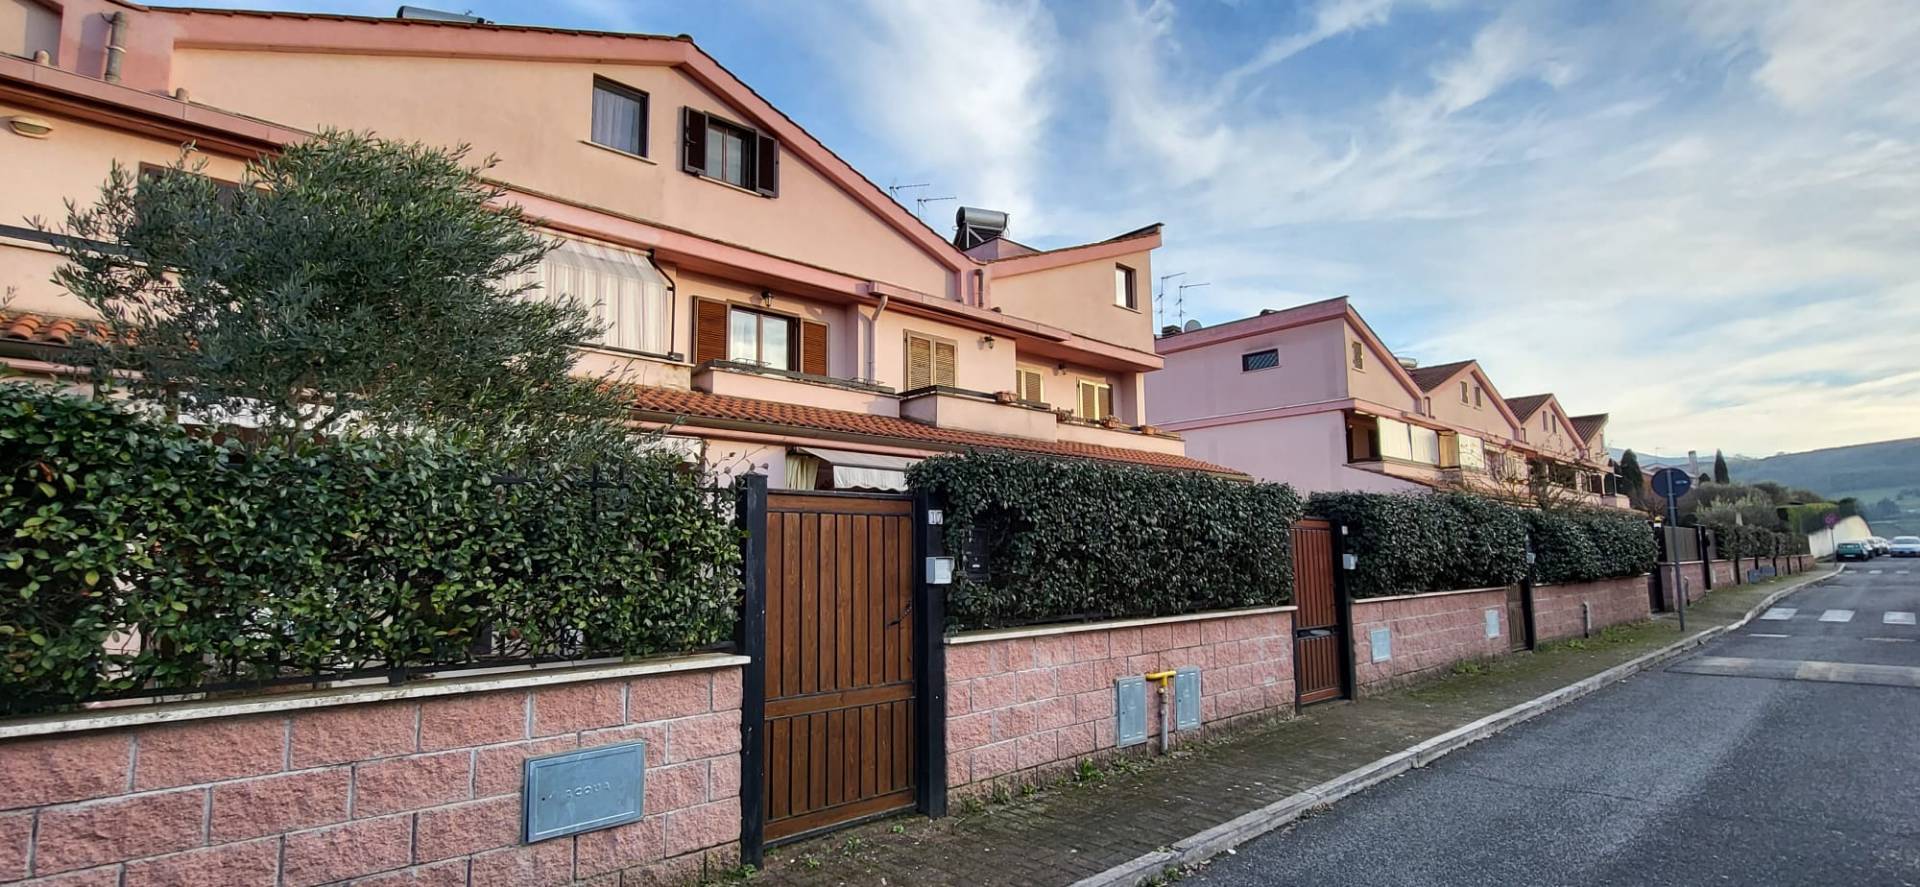 Villa a Schiera in vendita a Colleferro, 3 locali, prezzo € 118.000 | CambioCasa.it